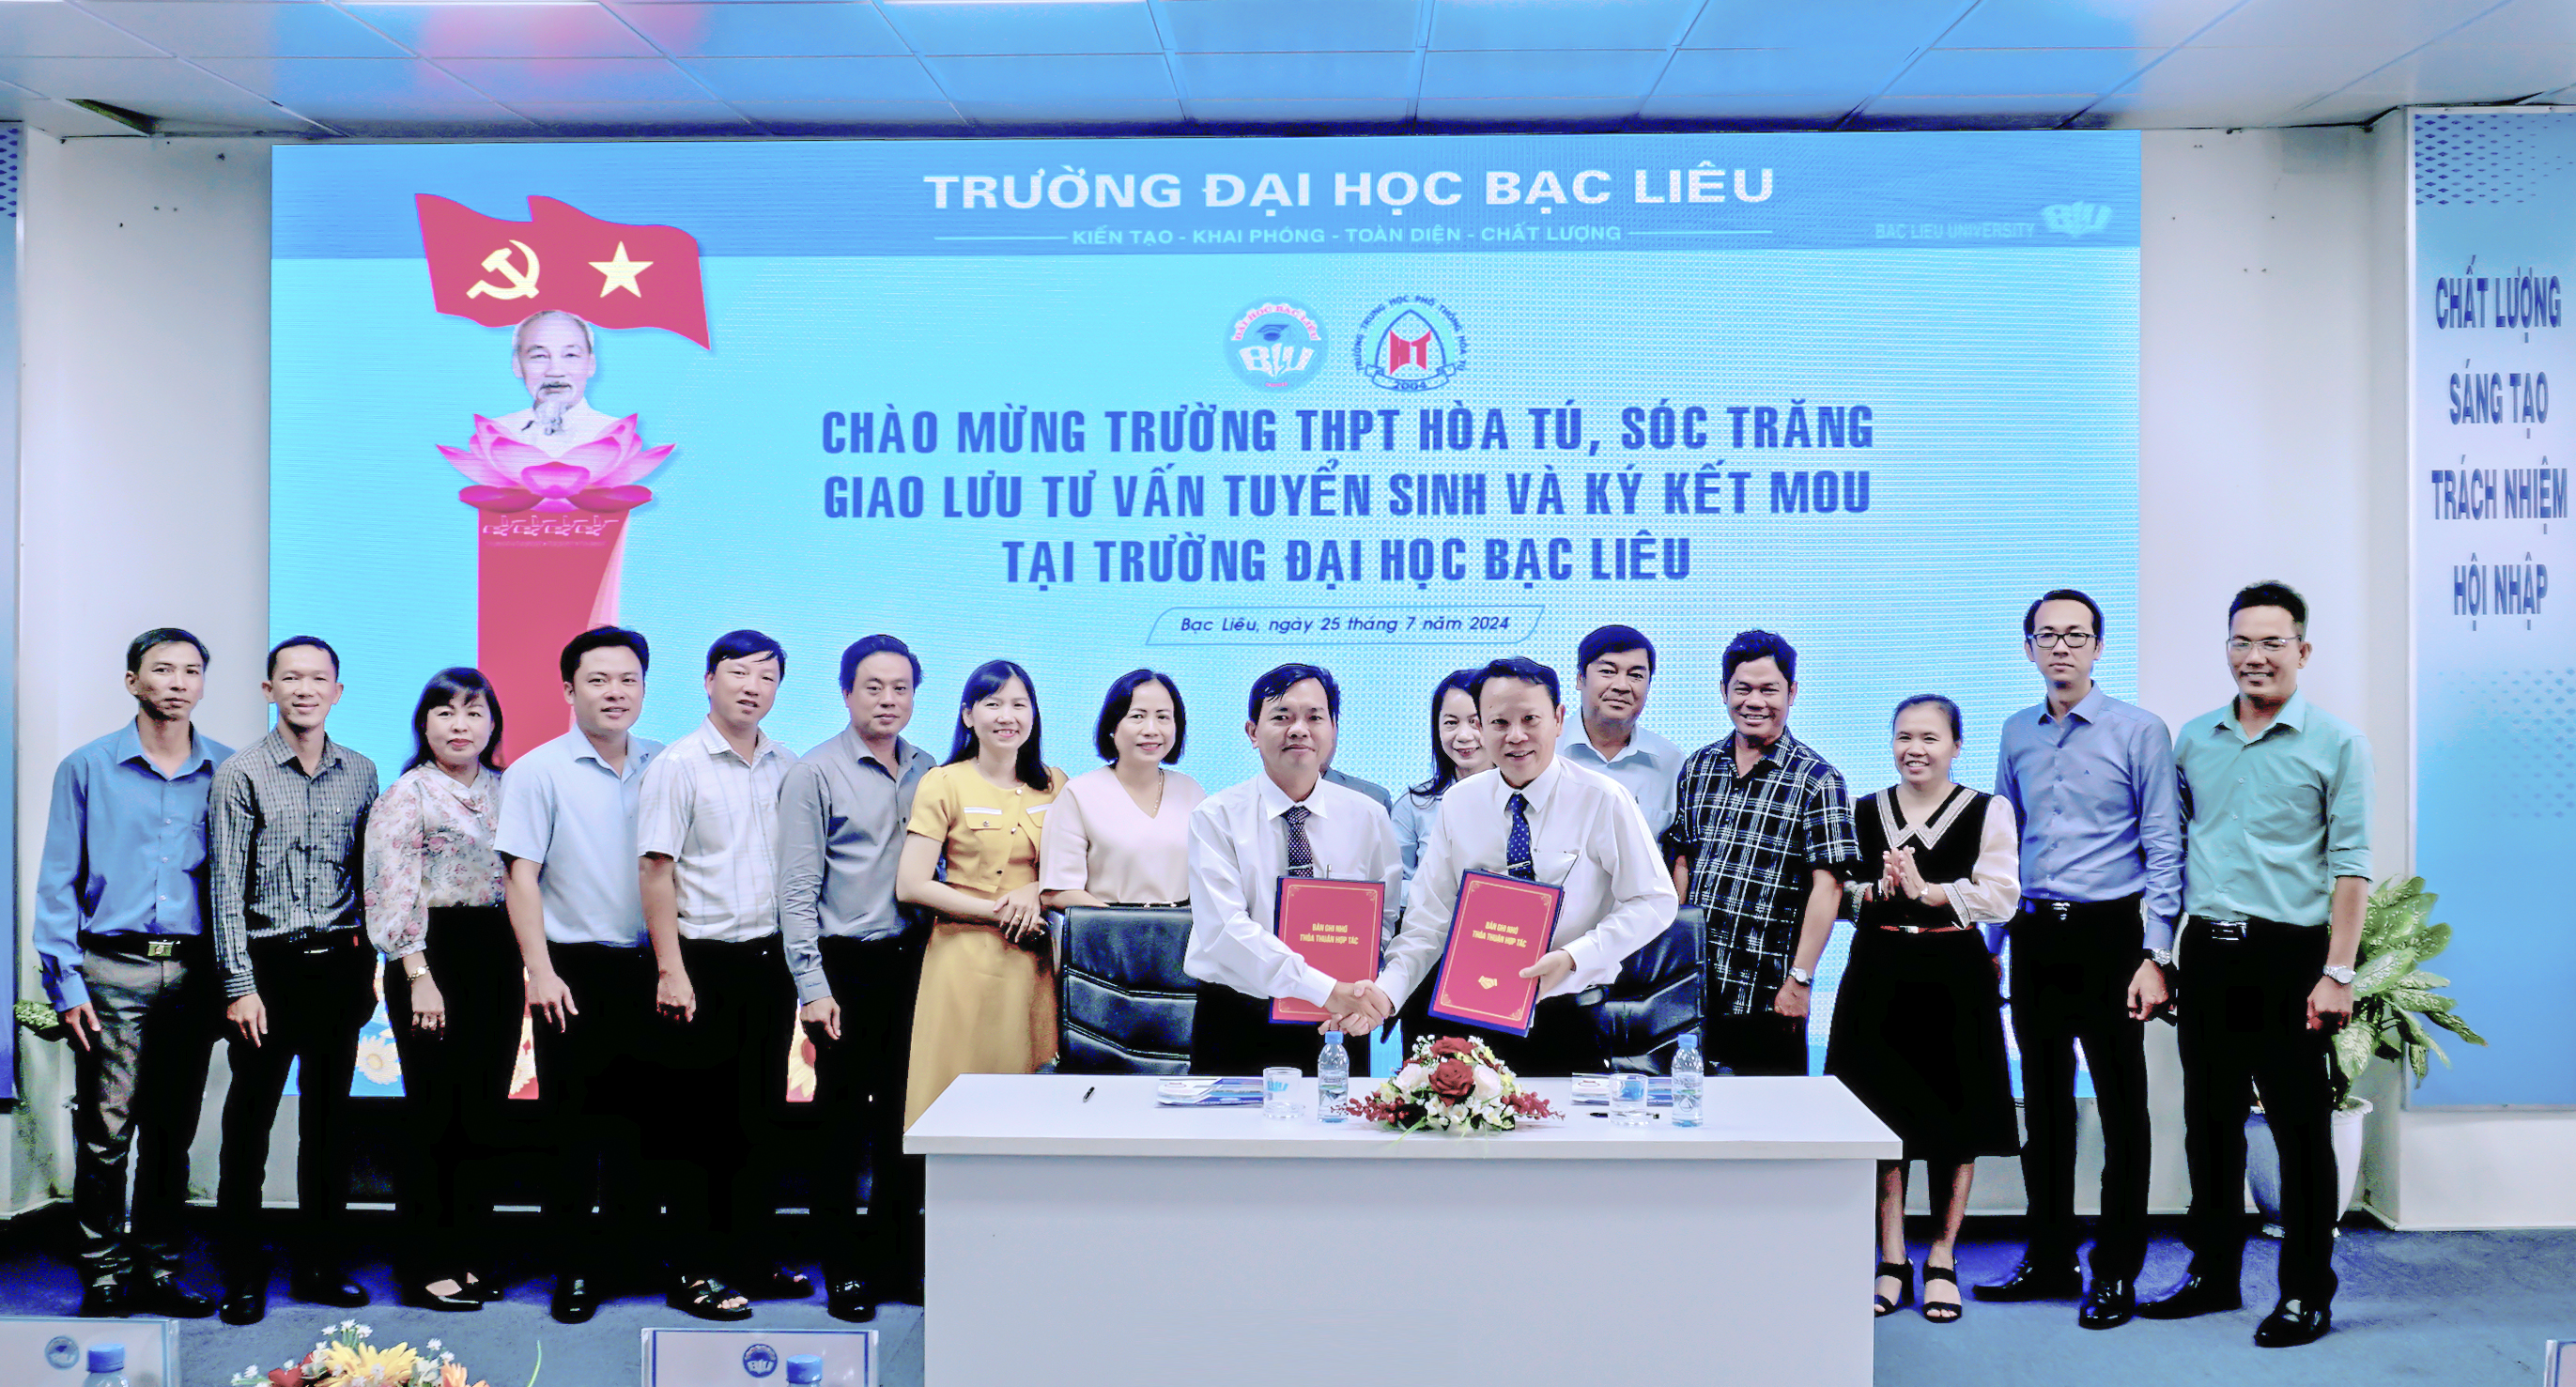 Trường Đại học Bạc Liêu tổ chức buổi Tư vấn tuyển sinh và Ký kết thoả thuận hợp tác với trường THPT Hoà Tú